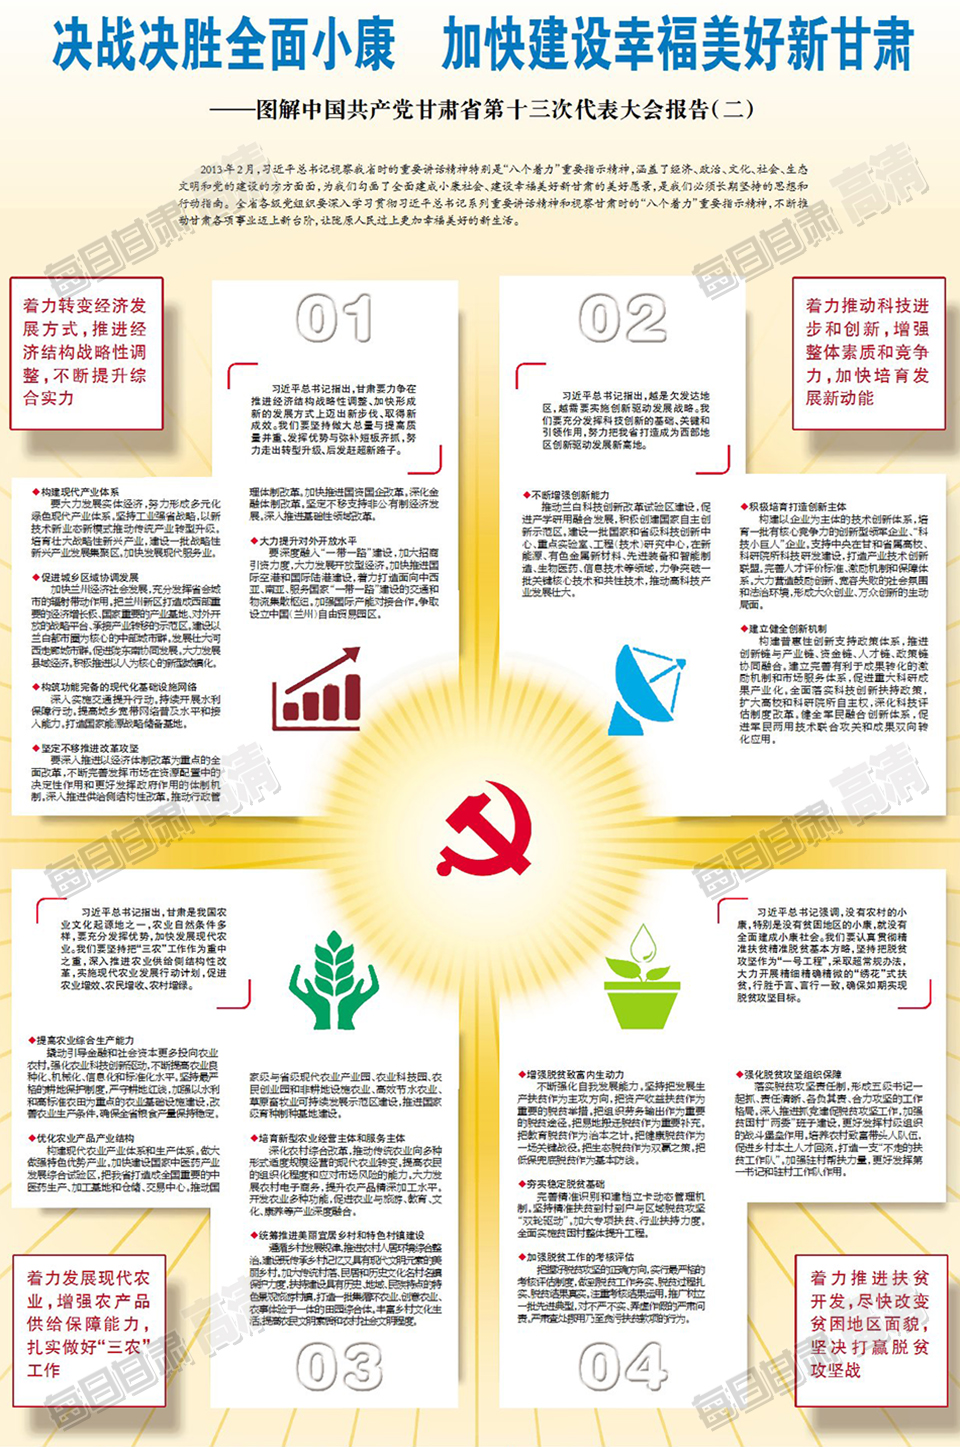 图解中国共产党甘肃省第十三次代表大会报告(二)